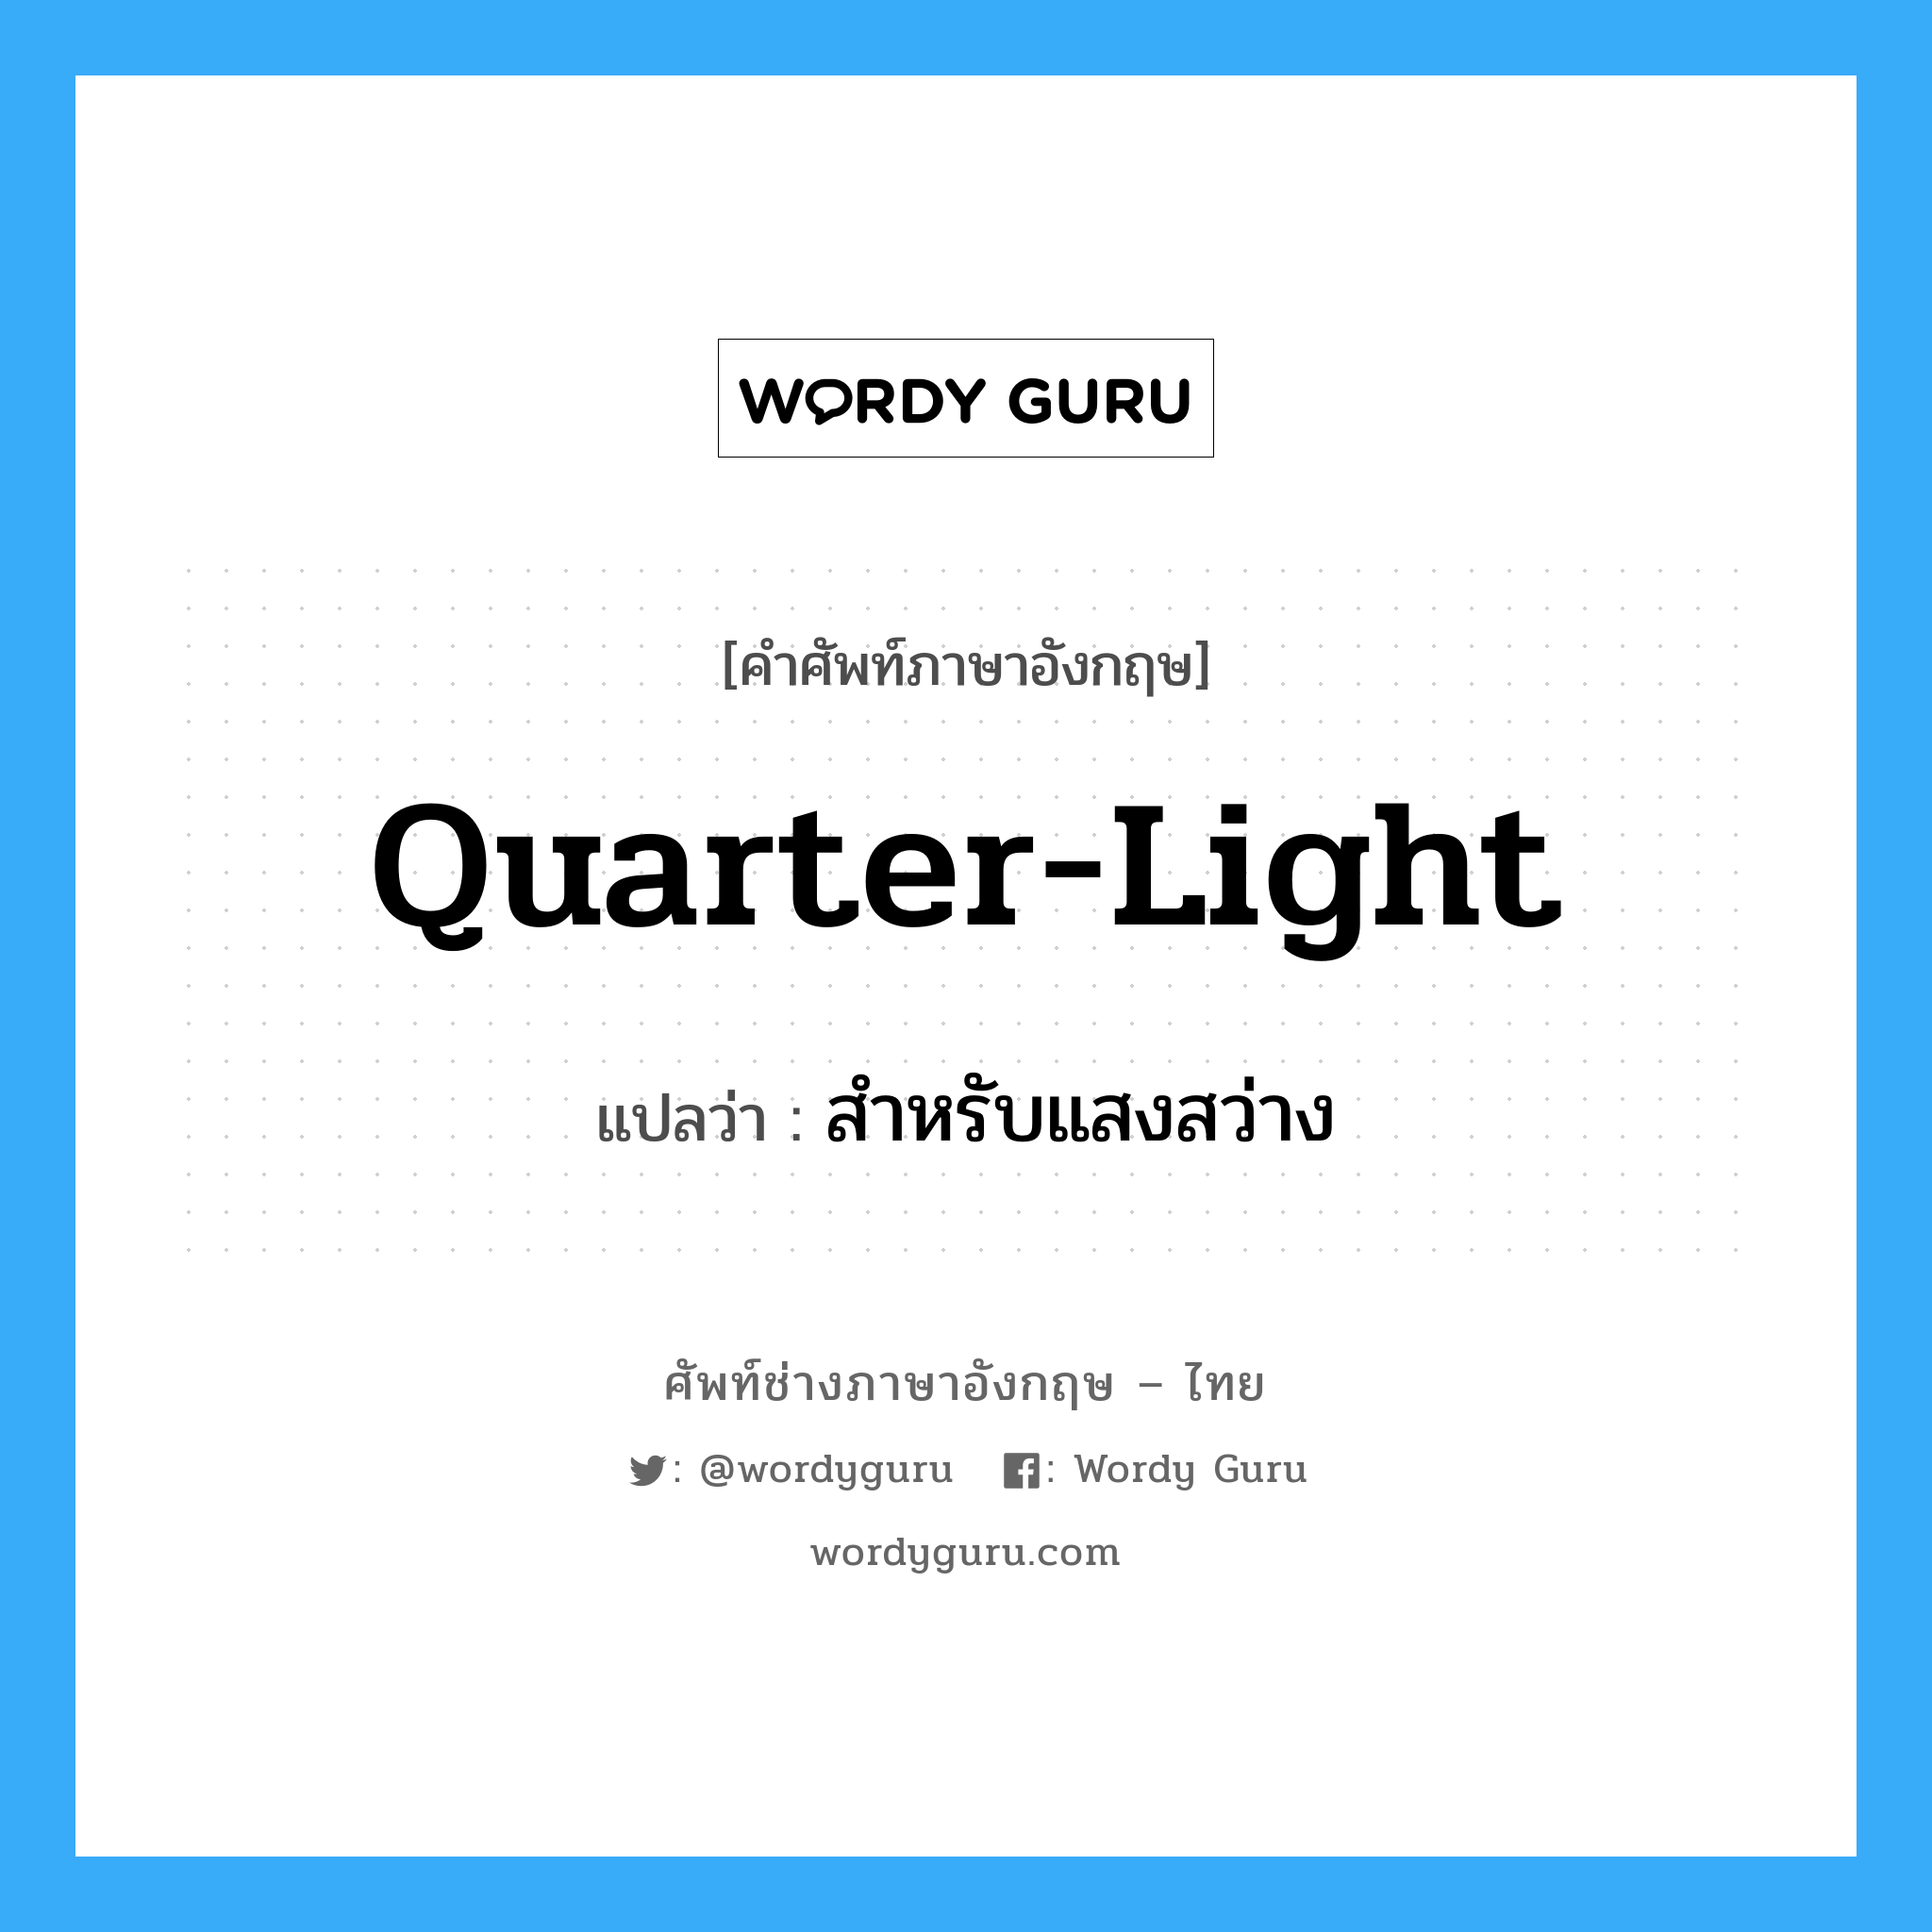 สำหรับแสงสว่าง ภาษาอังกฤษ?, คำศัพท์ช่างภาษาอังกฤษ - ไทย สำหรับแสงสว่าง คำศัพท์ภาษาอังกฤษ สำหรับแสงสว่าง แปลว่า quarter-light